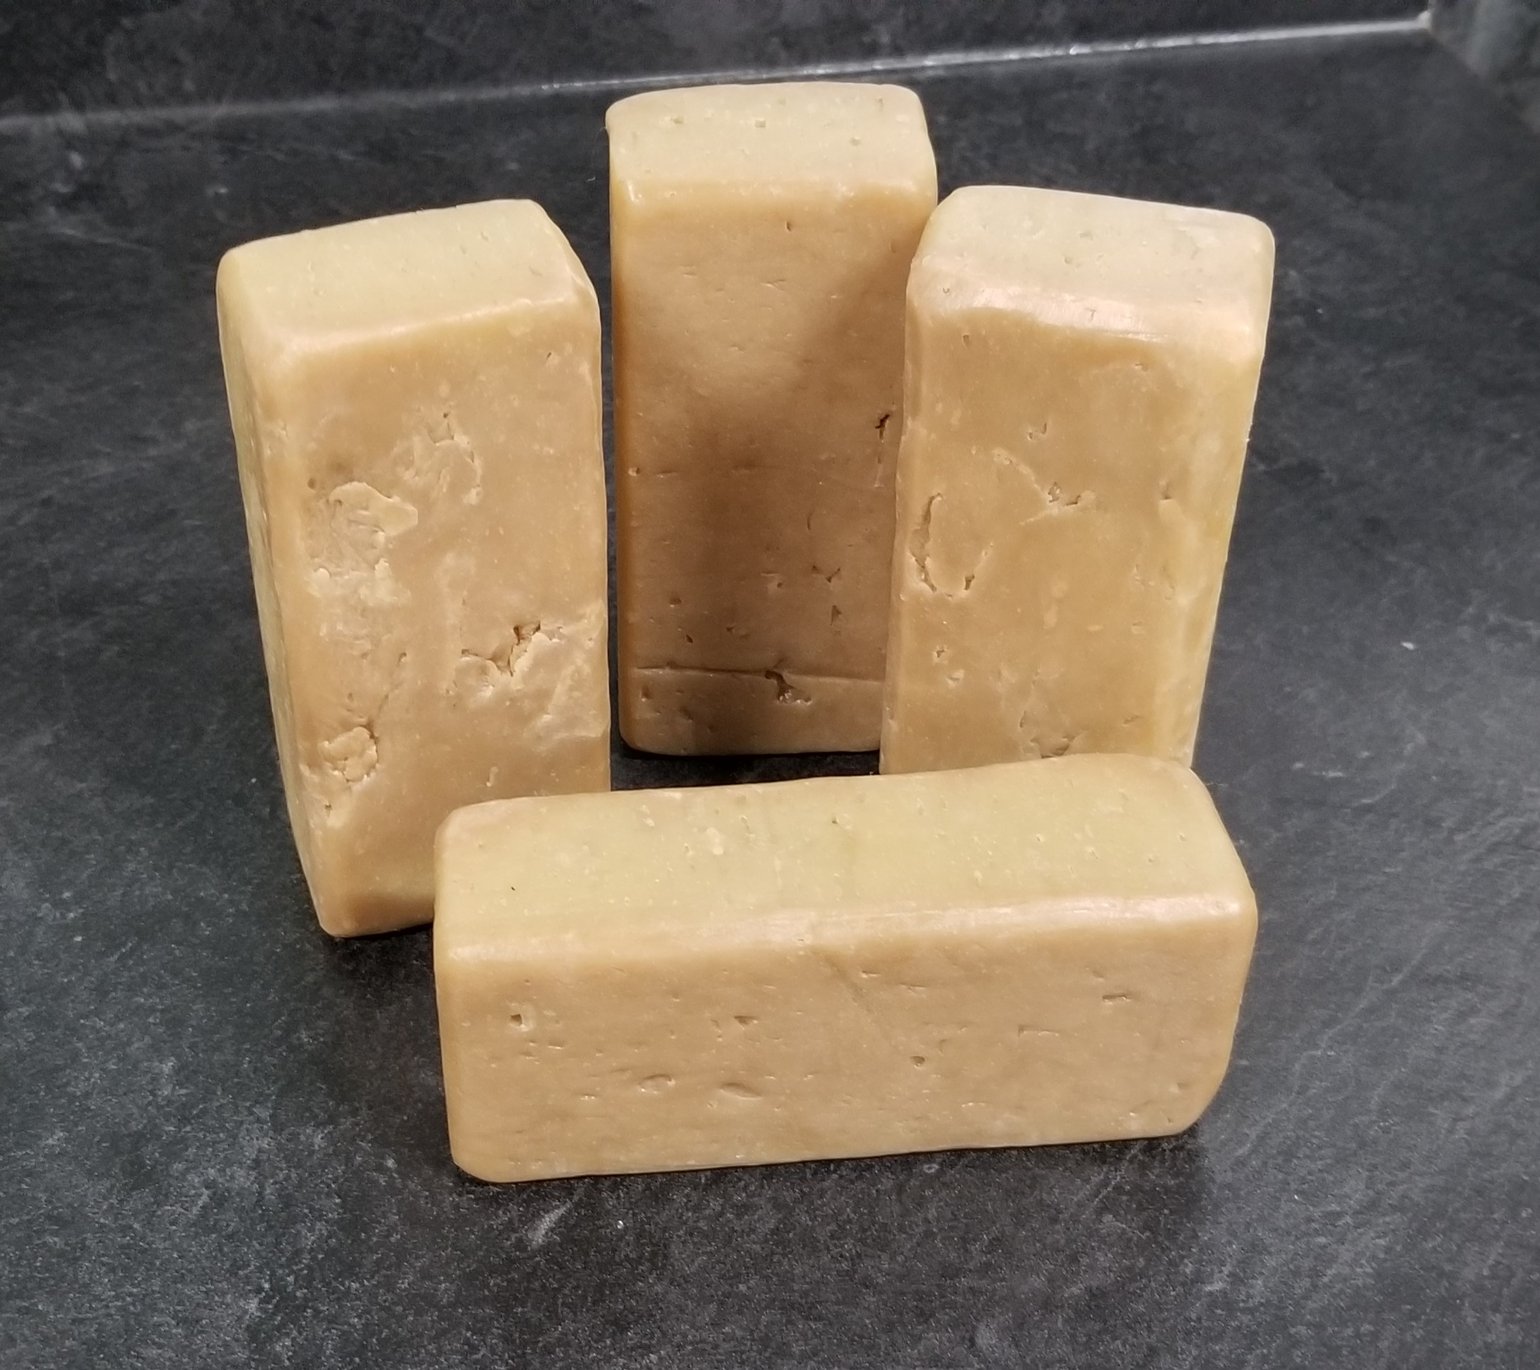 Image of Charcoal & Shaved Cedar -Beer soap 6 oz. brick bar